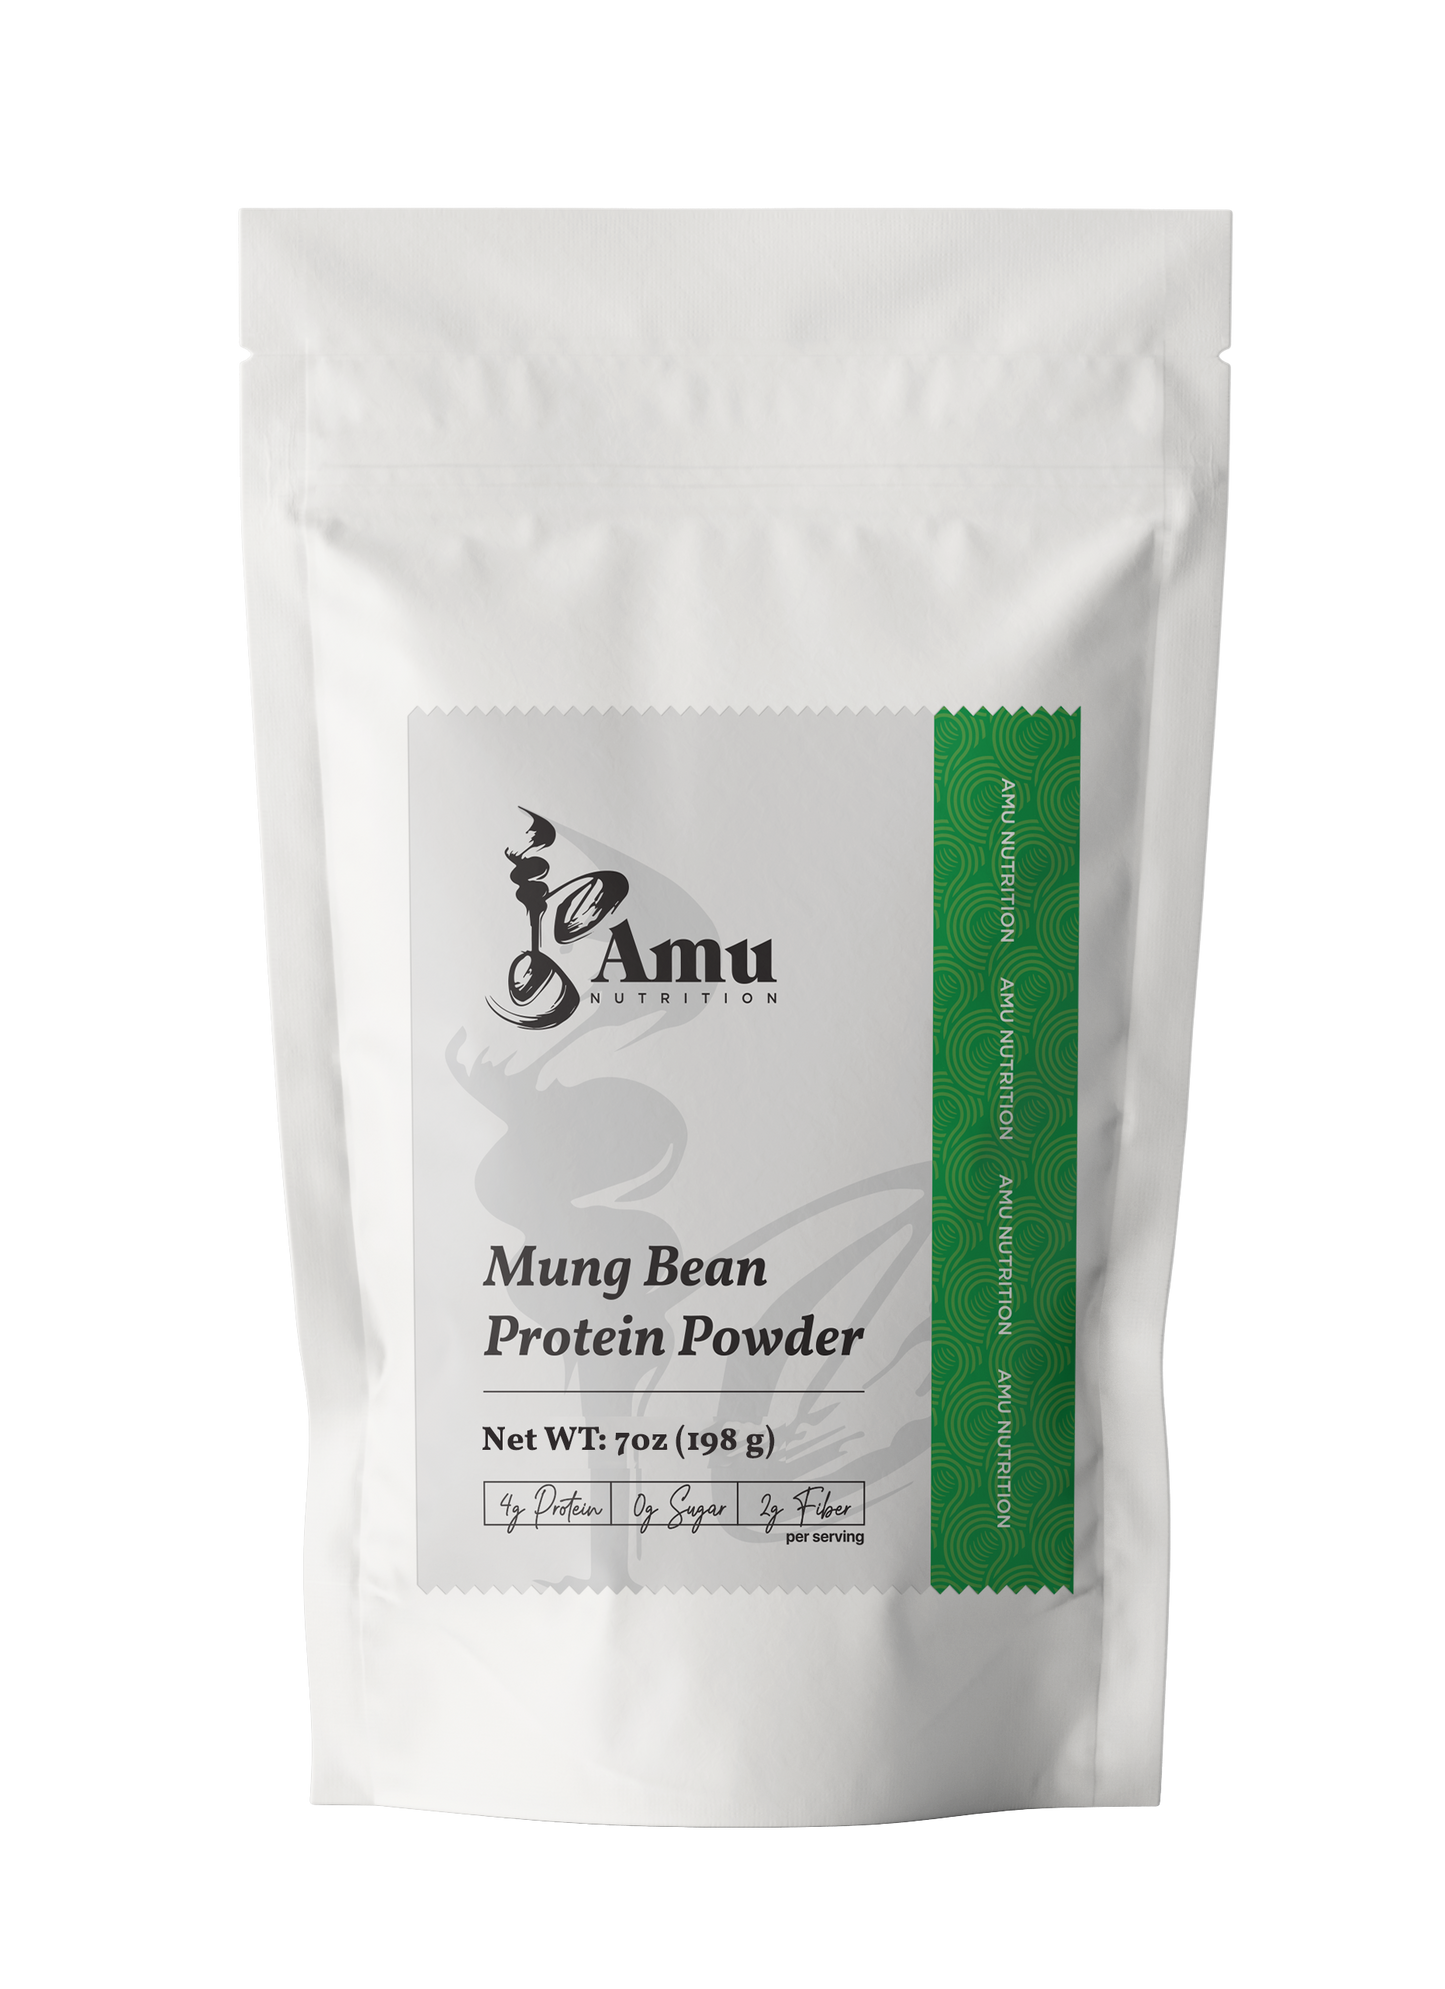 Roasted Mung Bean Powder.